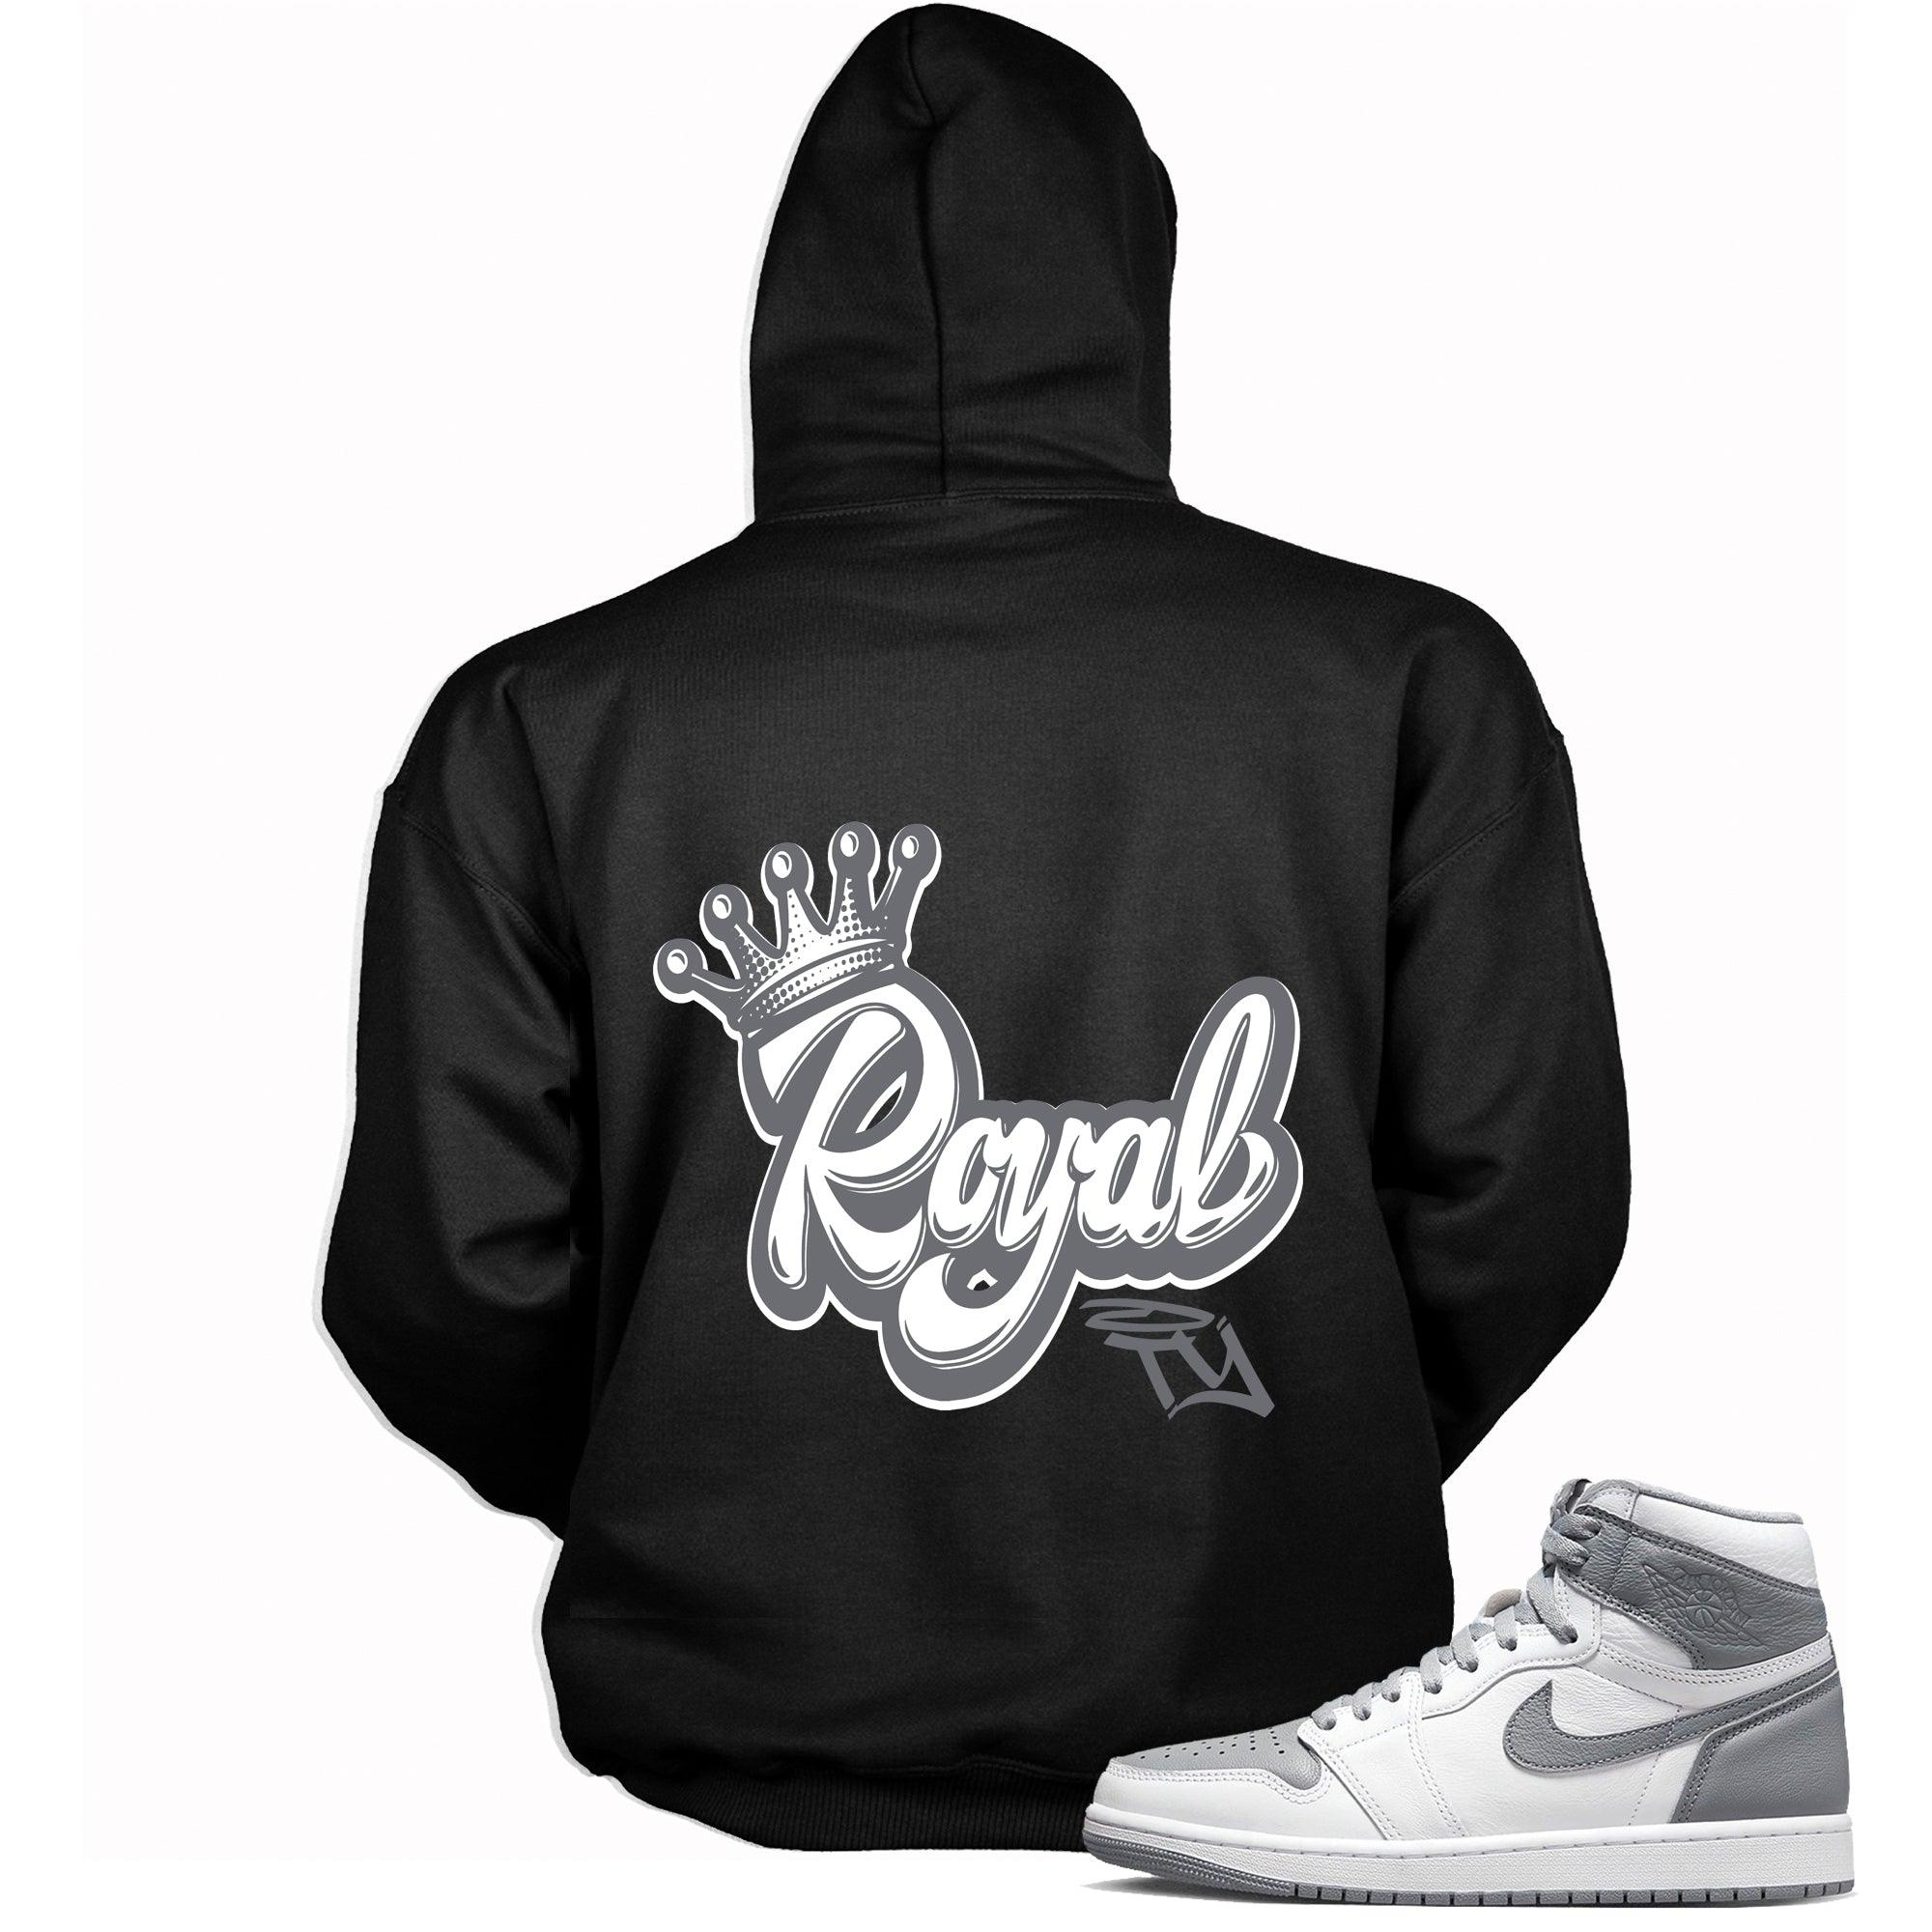 Royalty Sneaker Hoodie for Jordan 1s photo